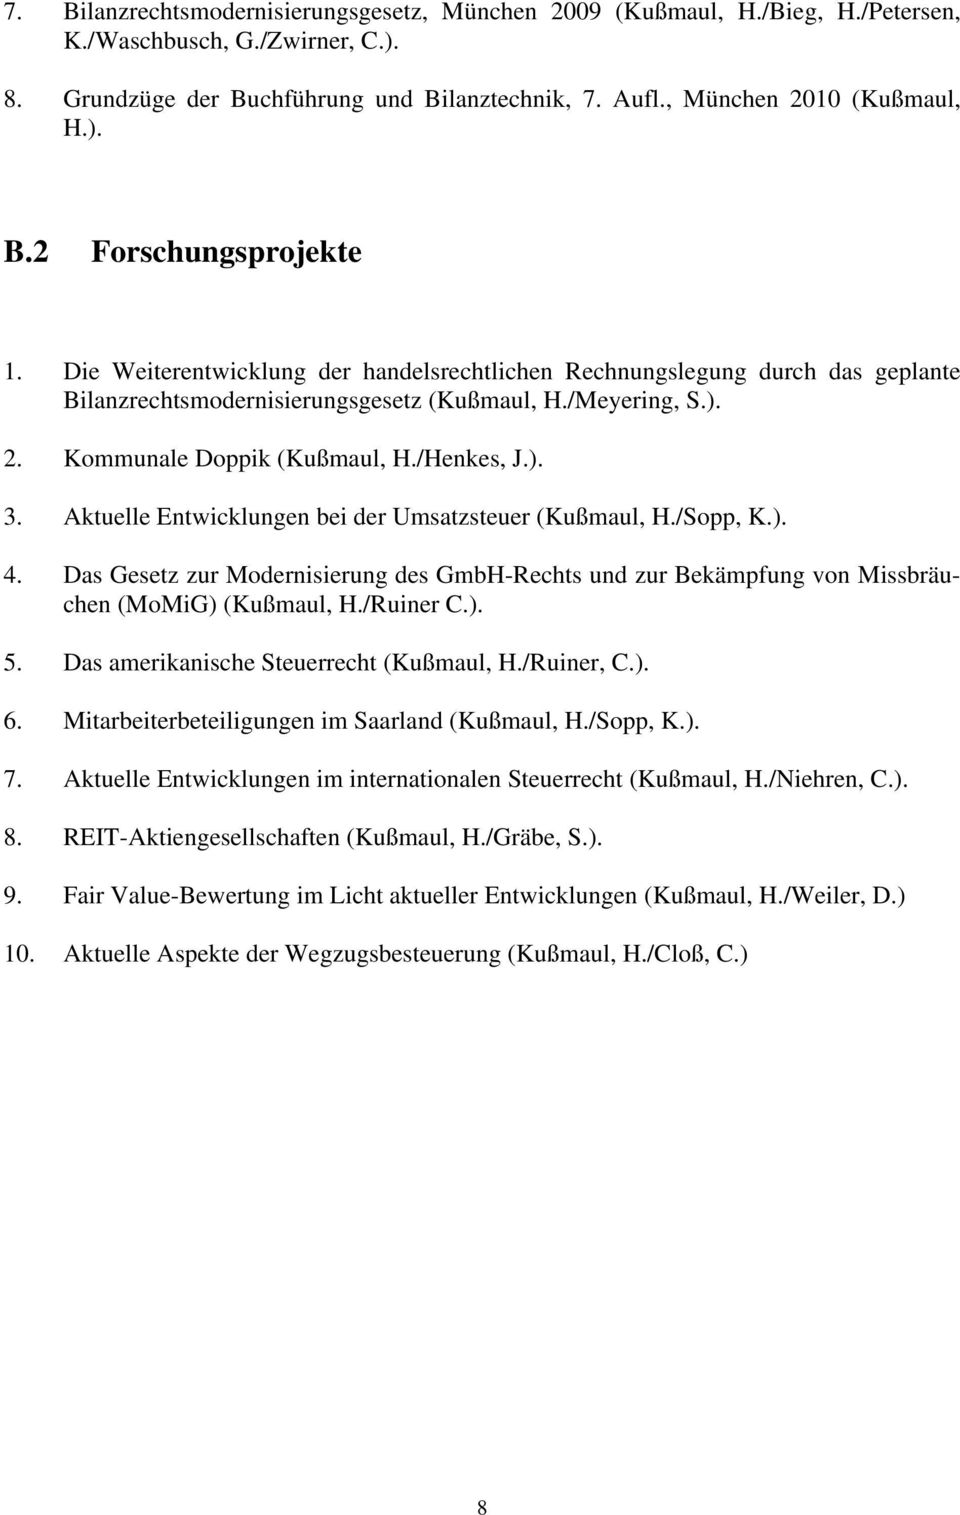 Aktuelle Entwicklungen bei der Umsatzsteuer (Kußmaul, H./Sopp, K.). 4. Das Gesetz zur Modernisierung des GmbH-Rechts und zur Bekämpfung von Missbräuchen (MoMiG) (Kußmaul, H./Ruiner C.). 5.